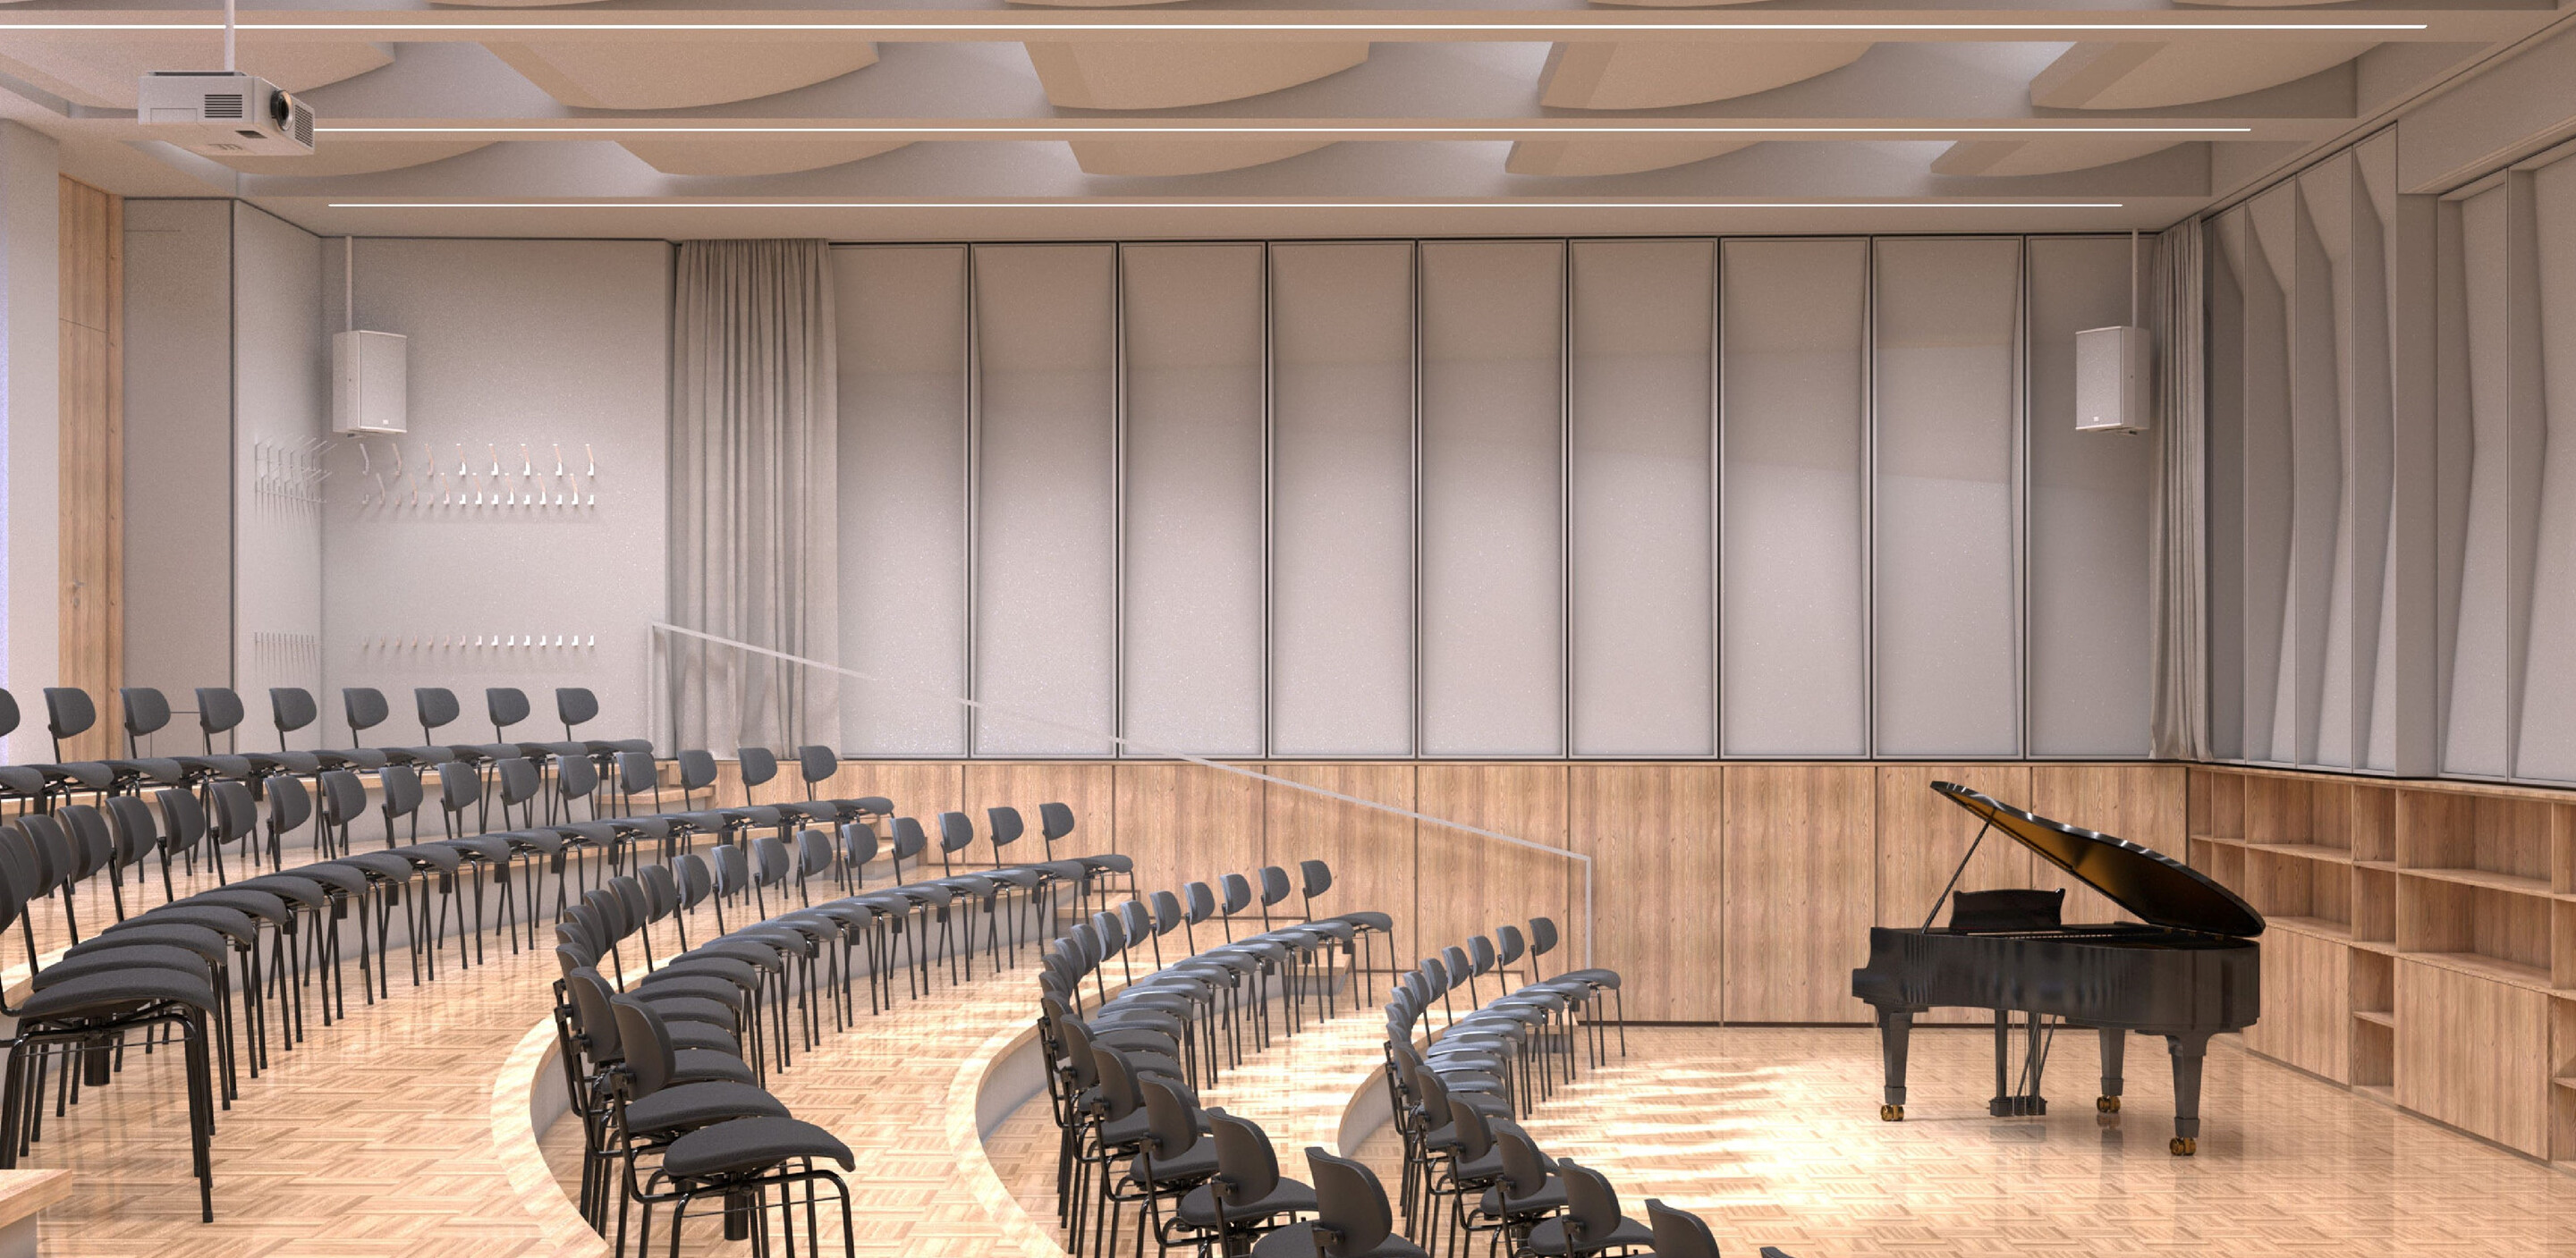 Großer, heller Saal, in welchem die Stühle sichelförmig um ein Klavier aufgestellt sind